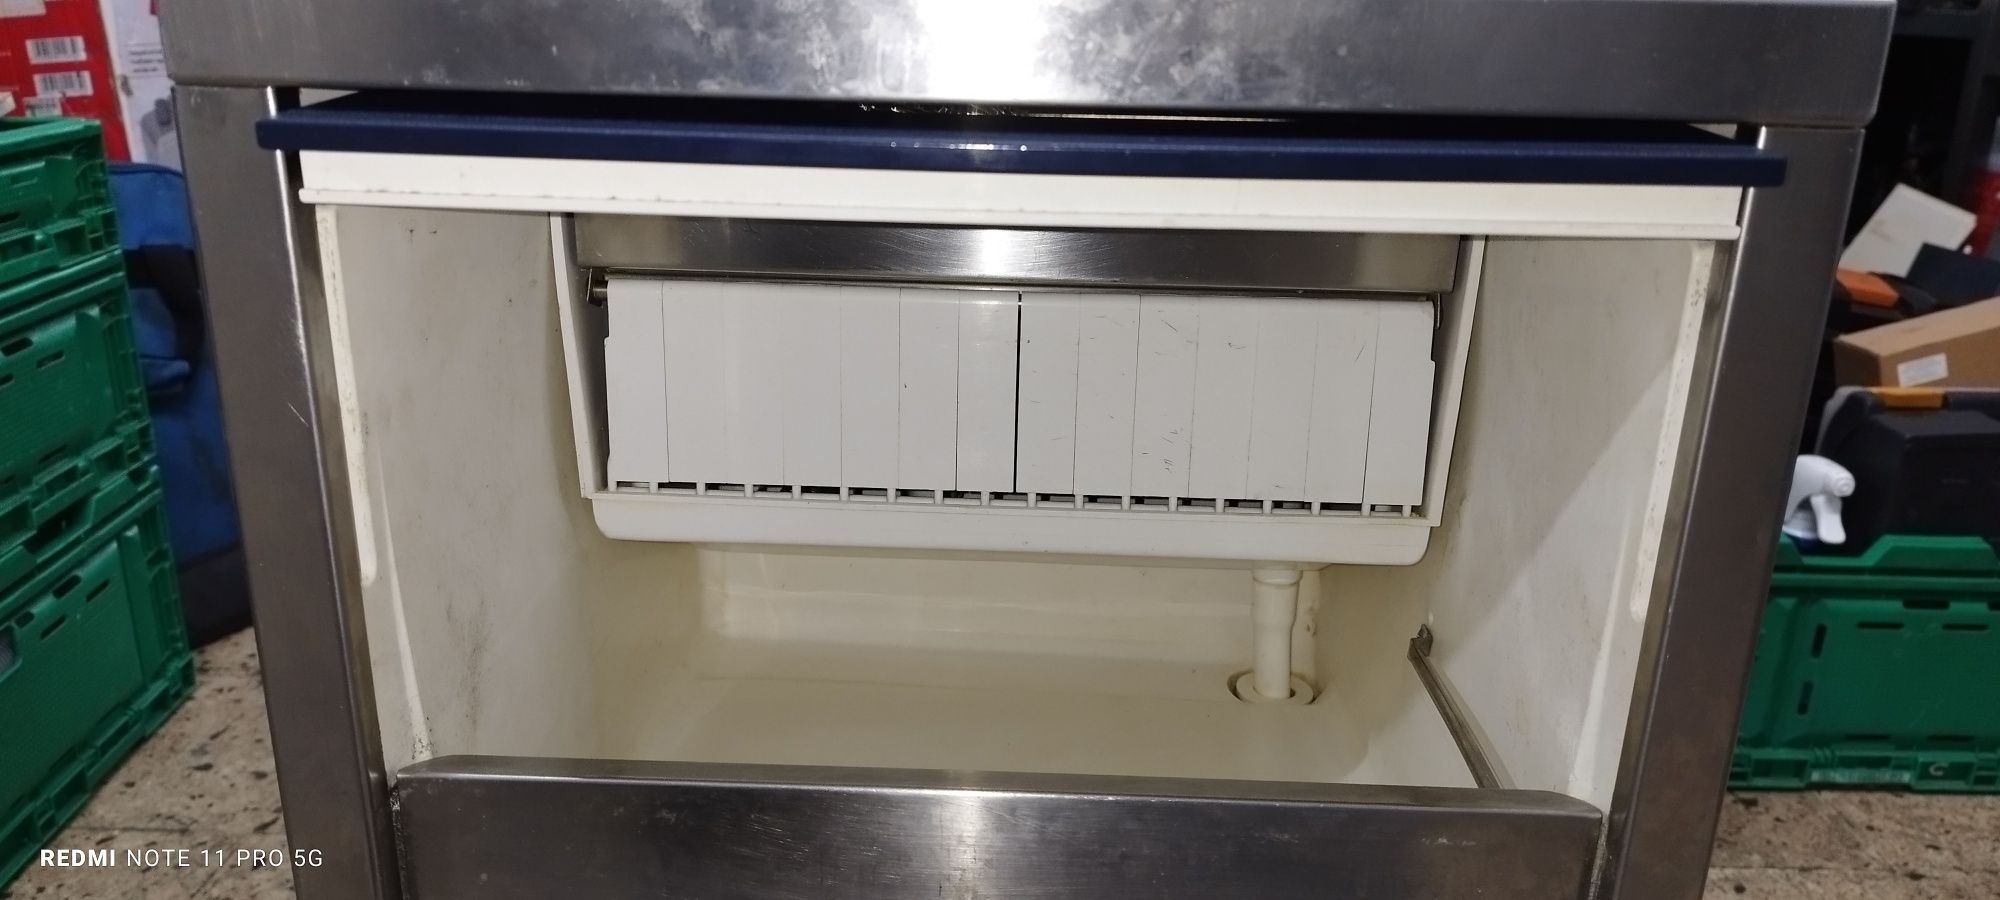 Máquina de gelo industrial revisada NTF de 24kg / dia.